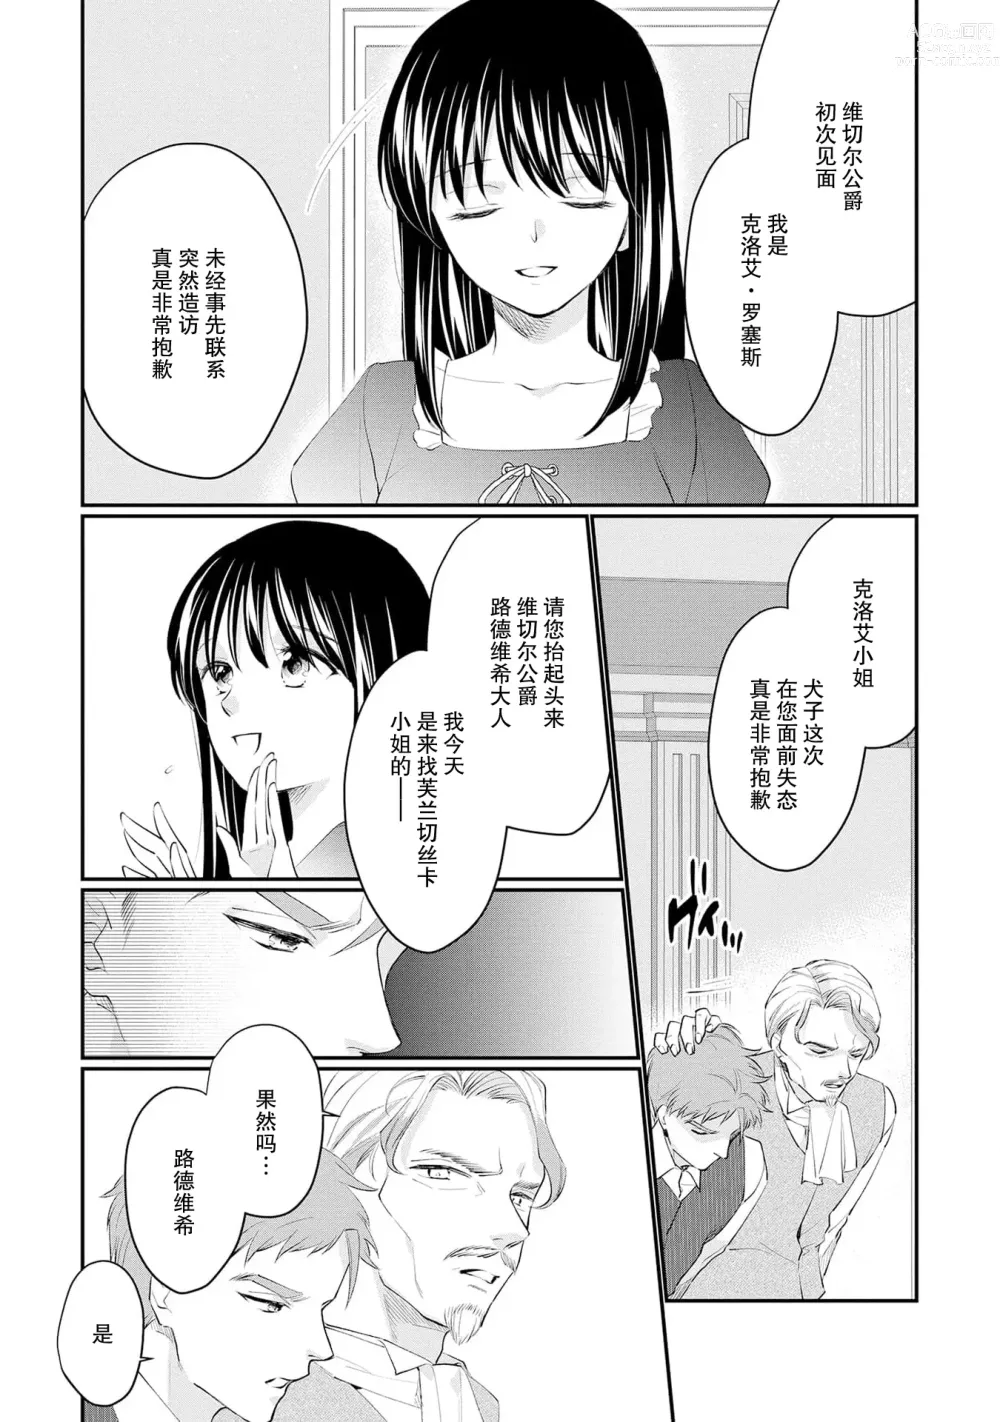 Page 276 of manga 新婚约者超宠我 1-11